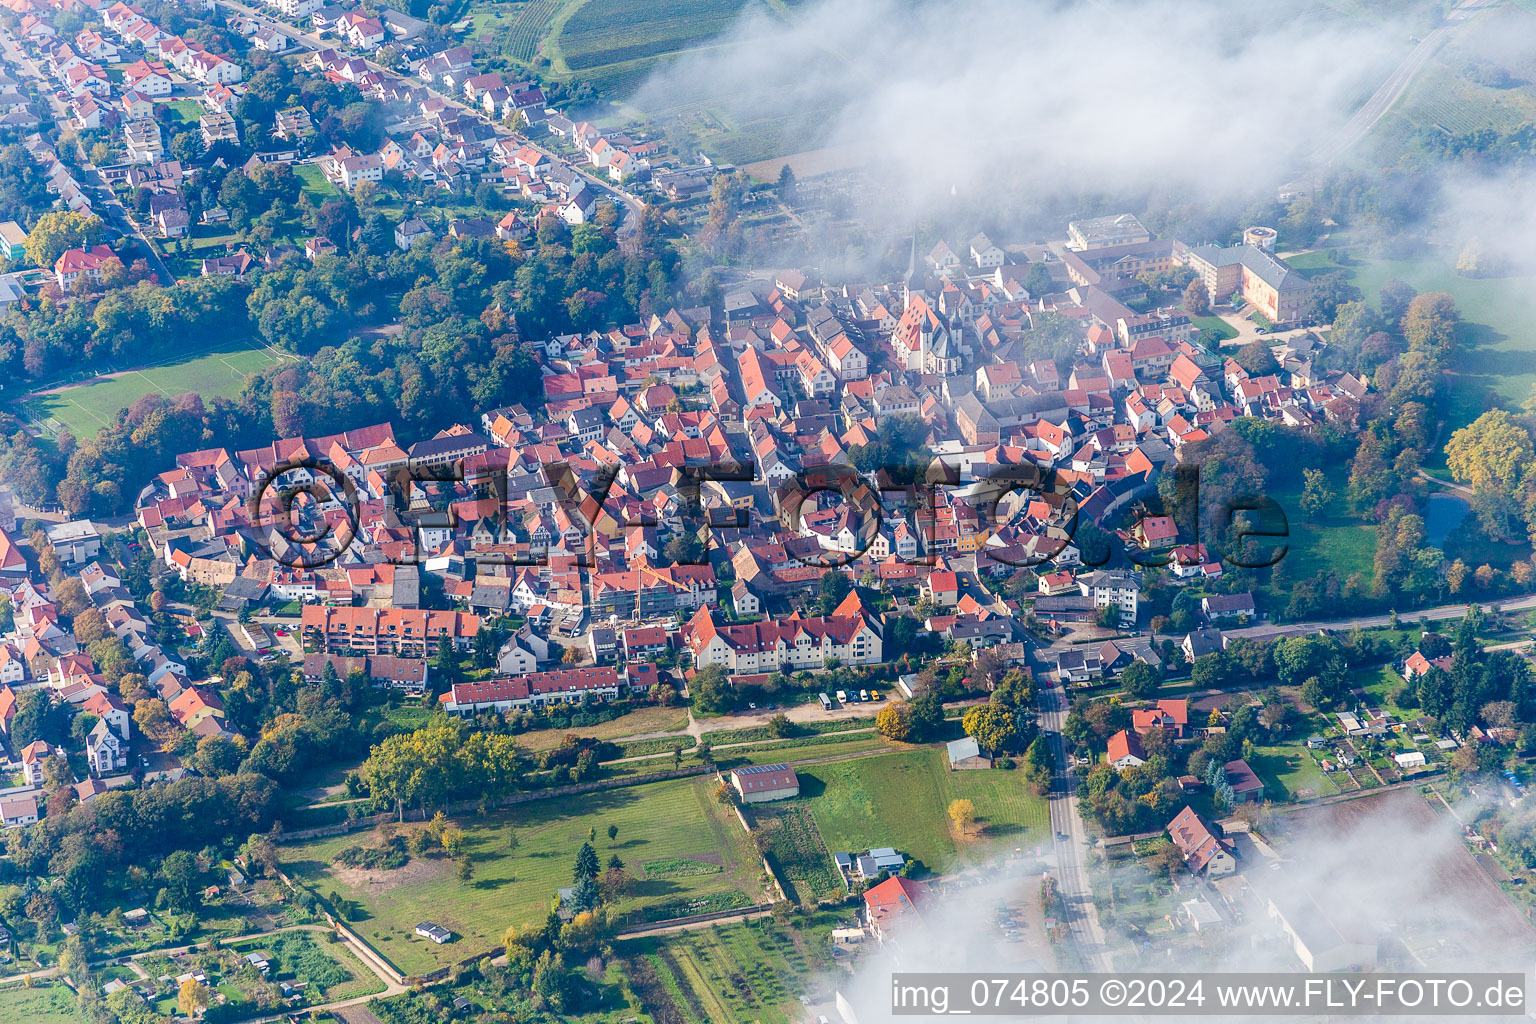 Village view in Herrnsheim in the state Rhineland-Palatinate, Germany